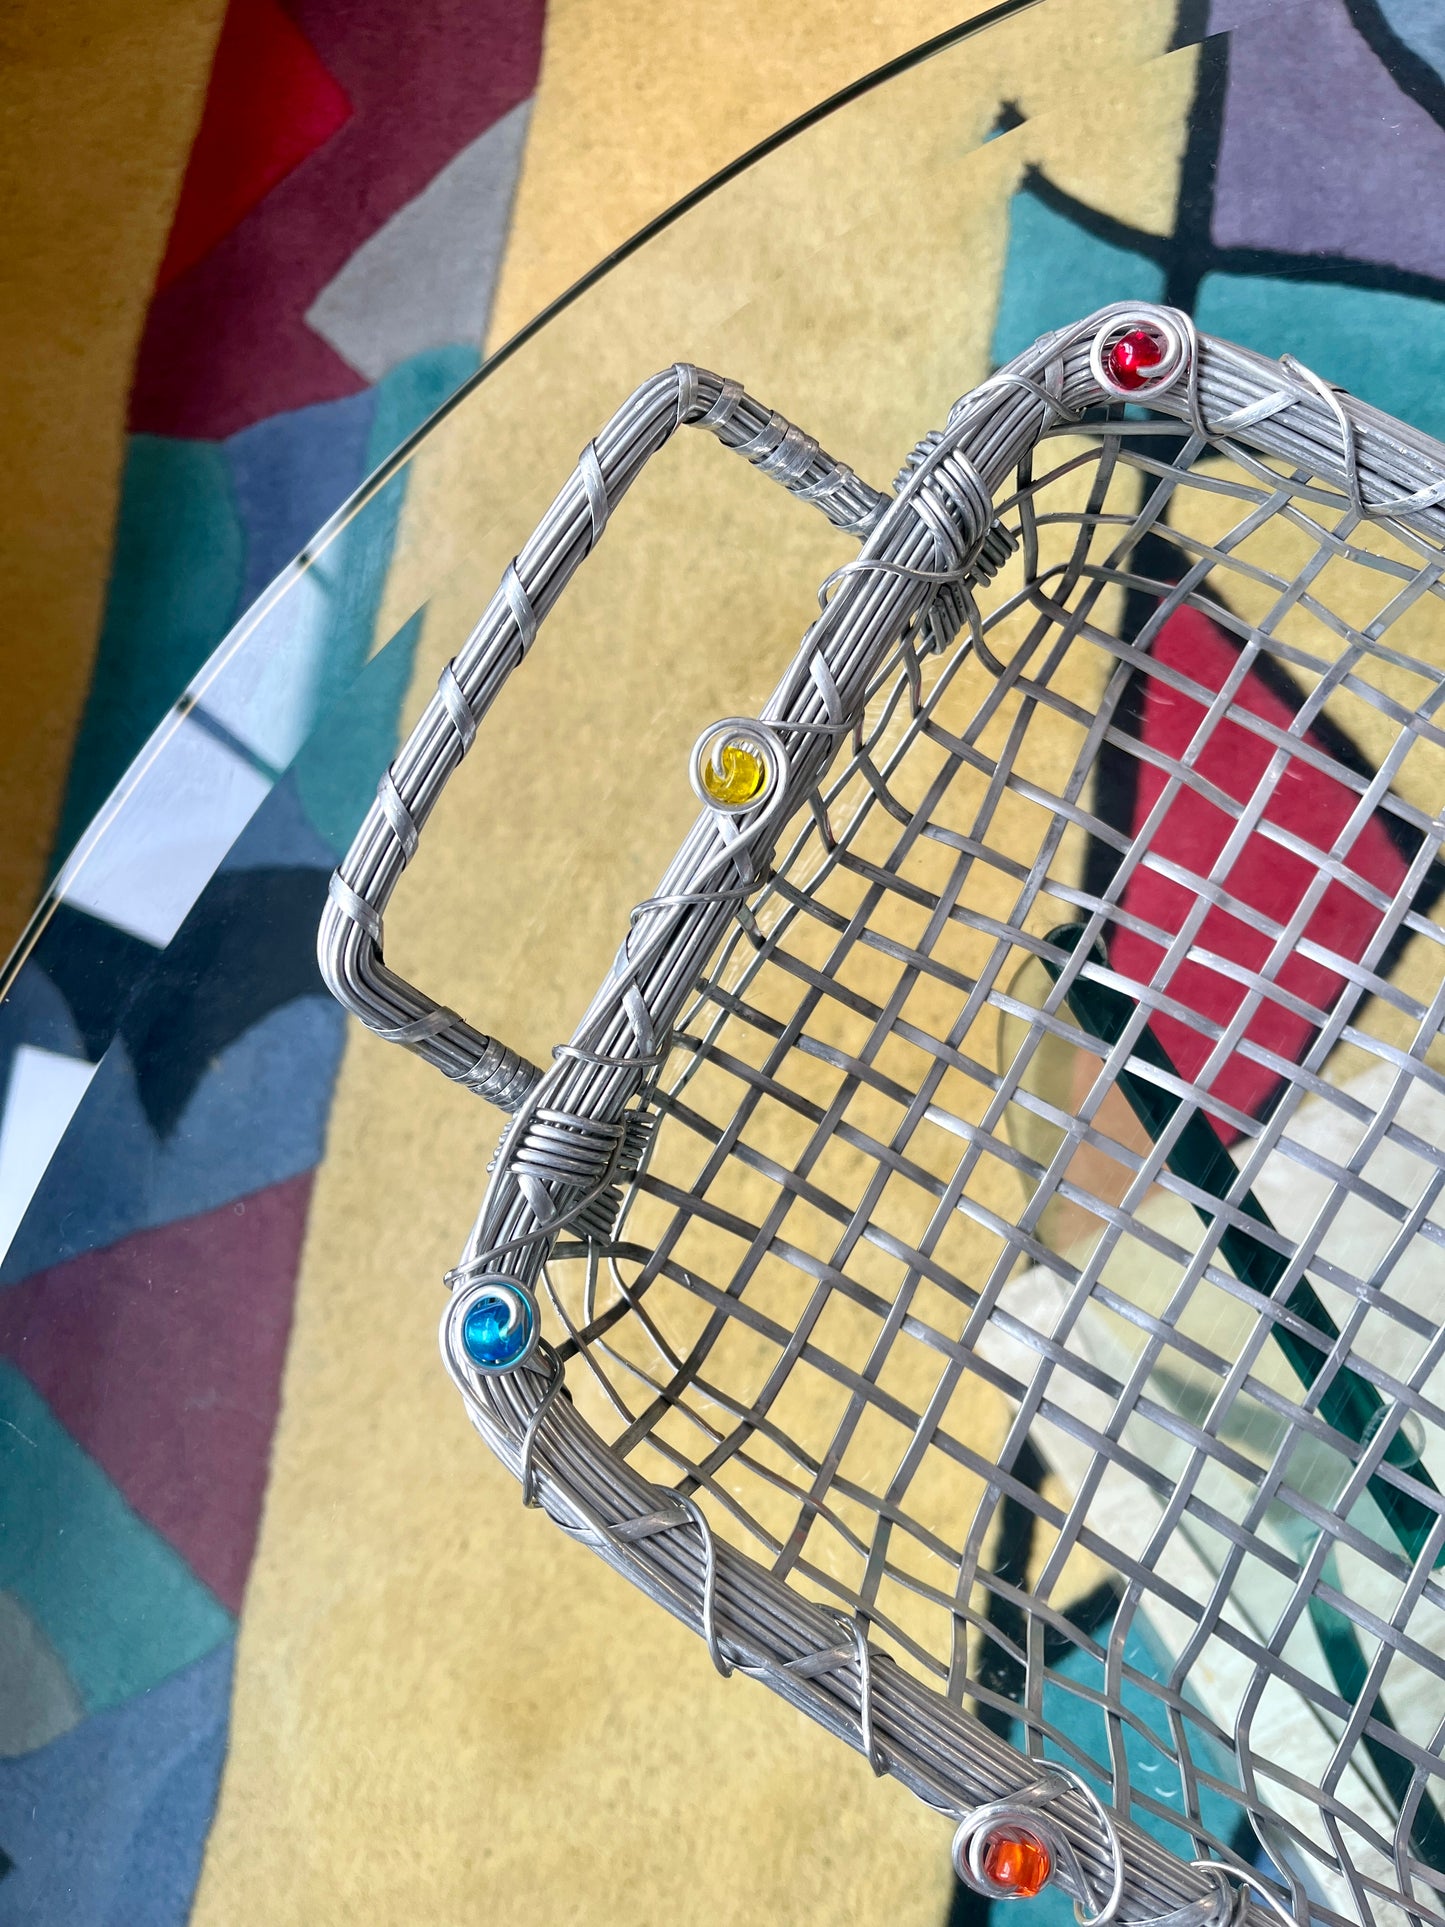 Vintage Postmodern Woven Wire Baskets & Napkin Holder